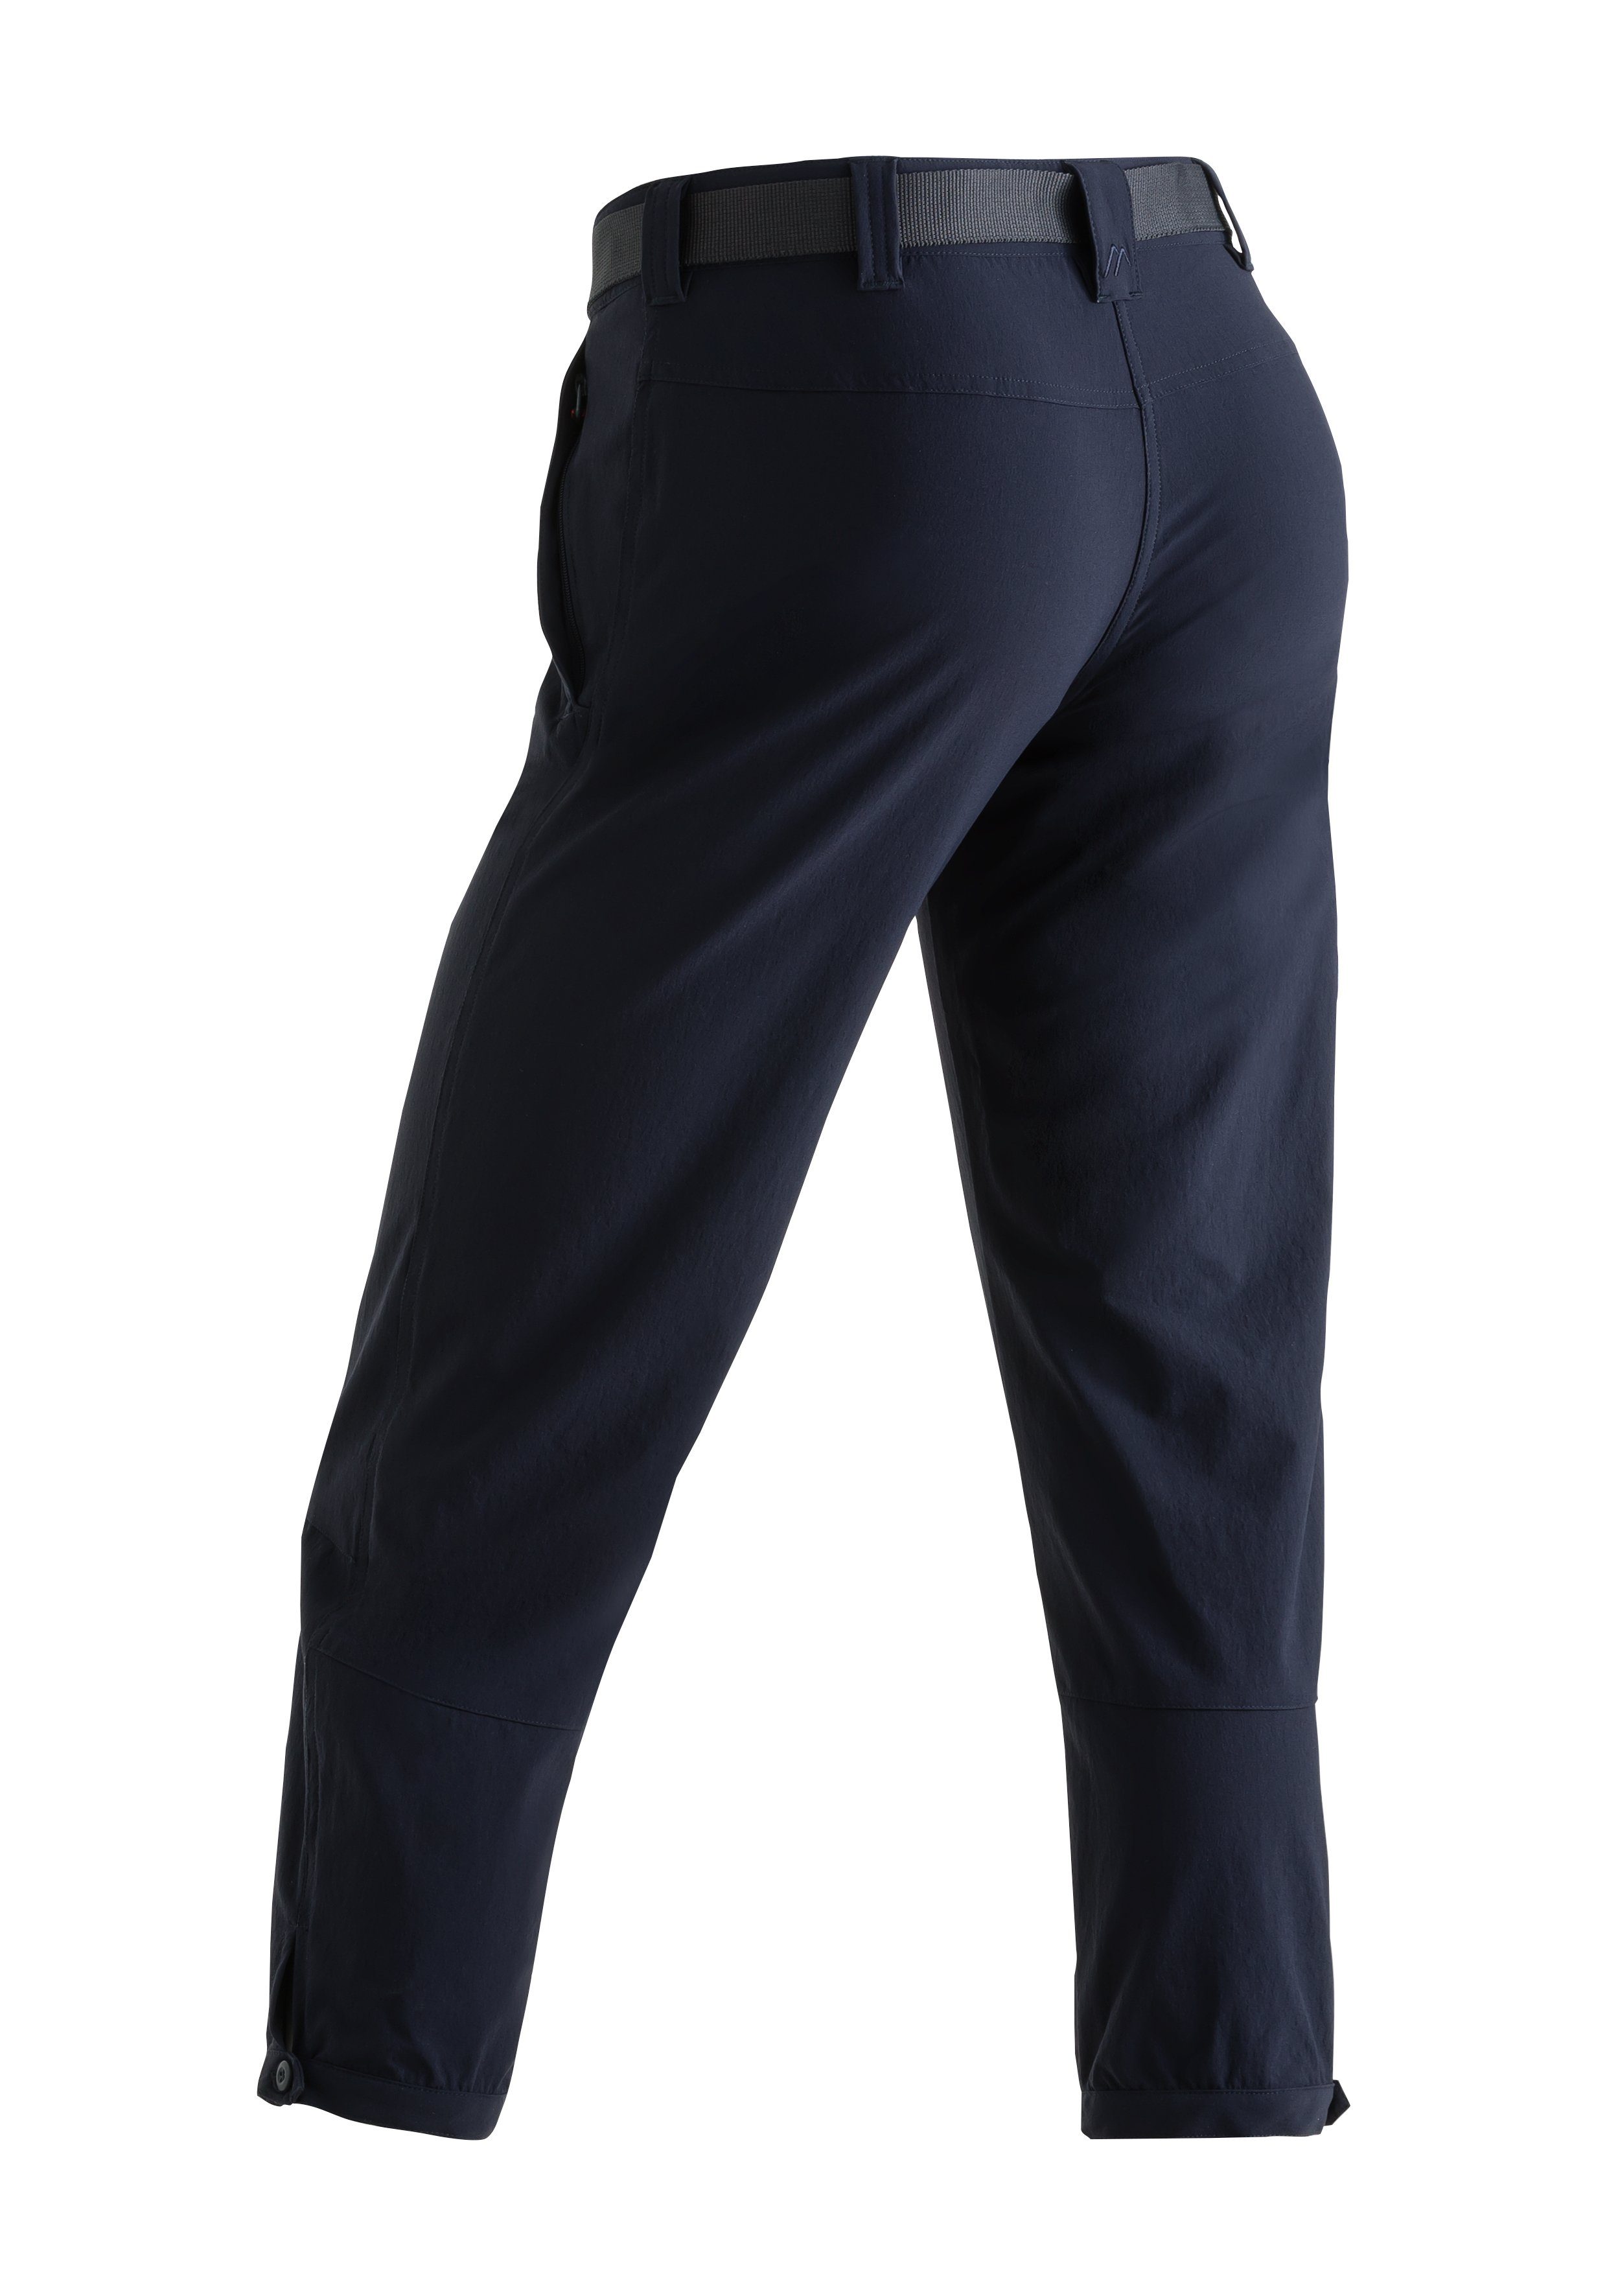 Lulaka elastische Outdoor-Hose Damen atmungsaktive Maier Sports 7/8 Wanderhose, und Funktionshose dunkelblau